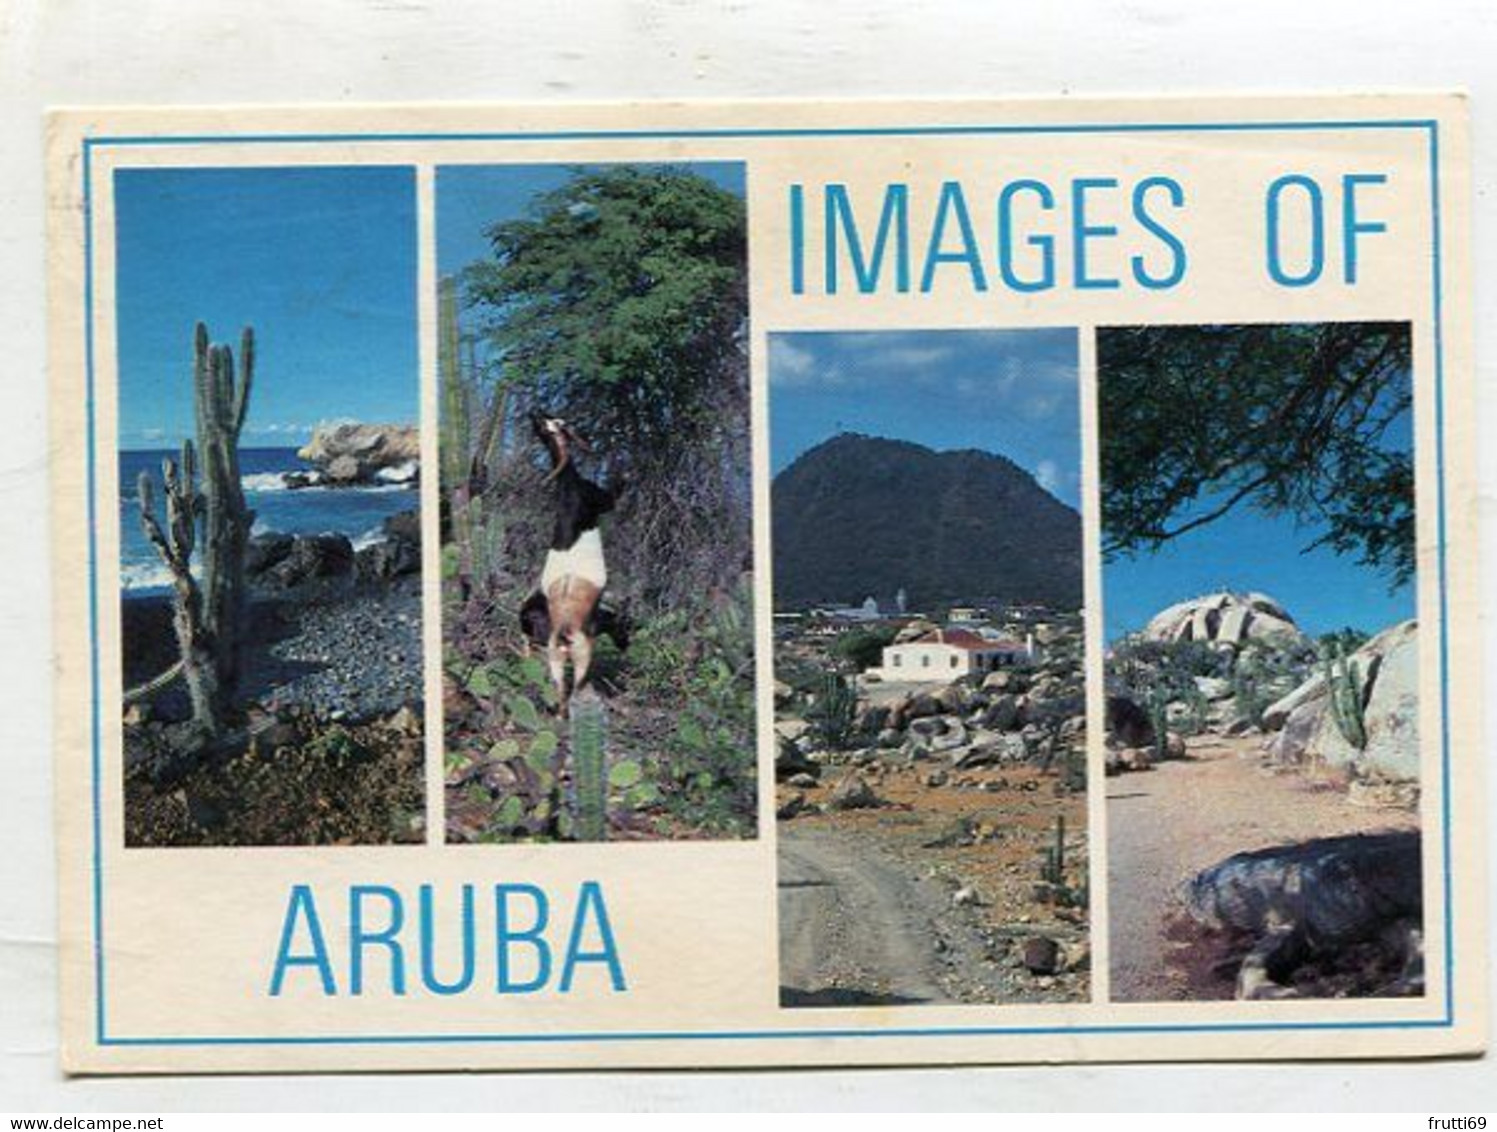 AK 043978 ARUBA - Images - Aruba